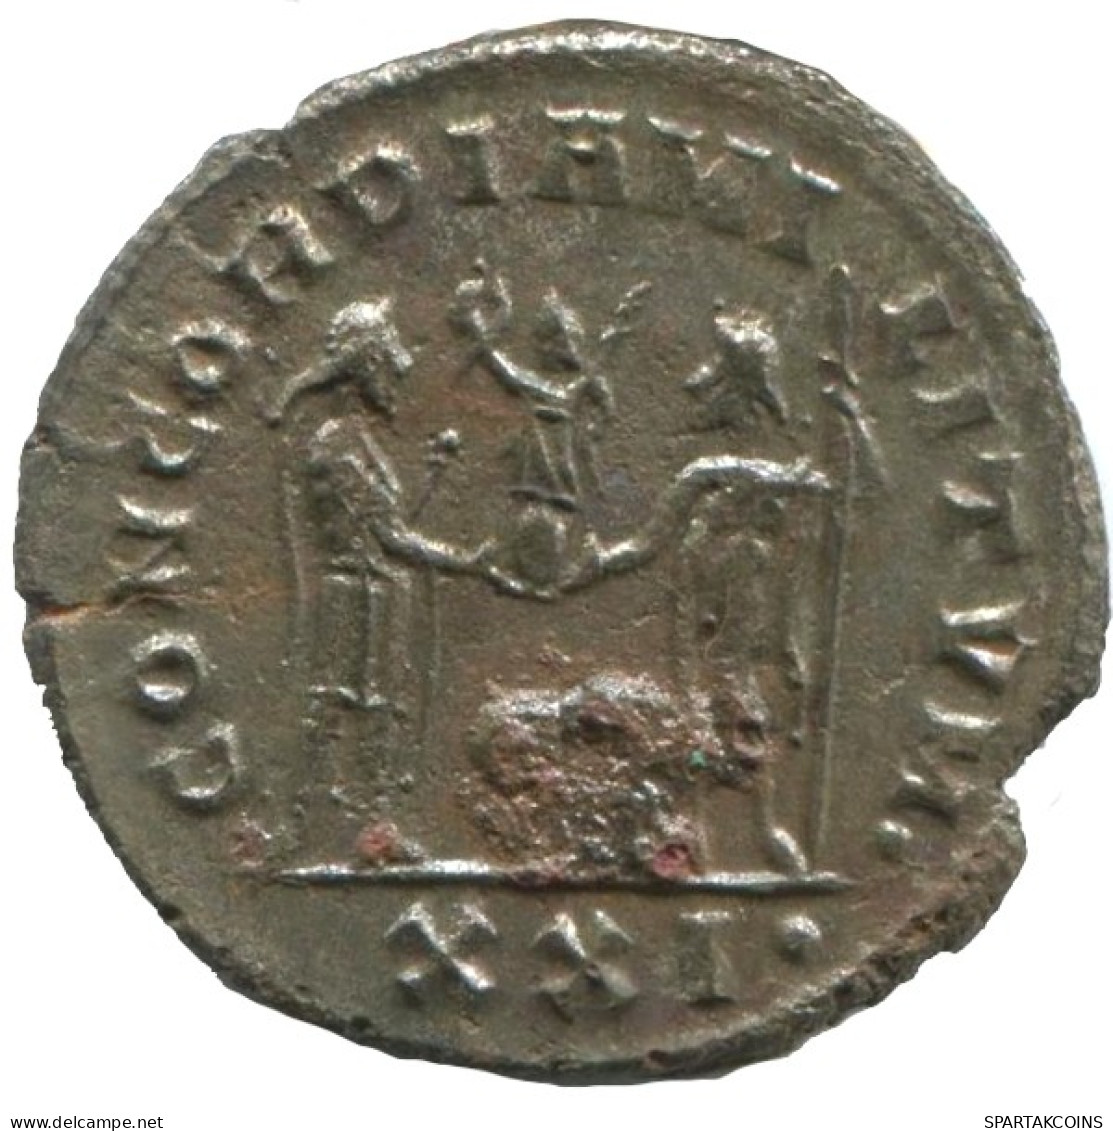 MAXIMIANUS ANTONINIANUS Heraclea (XXI ) AD292/5 CONCORDIA MILI TVM #ANT1895.48.E.A - La Tetrarchia E Costantino I Il Grande (284 / 307)